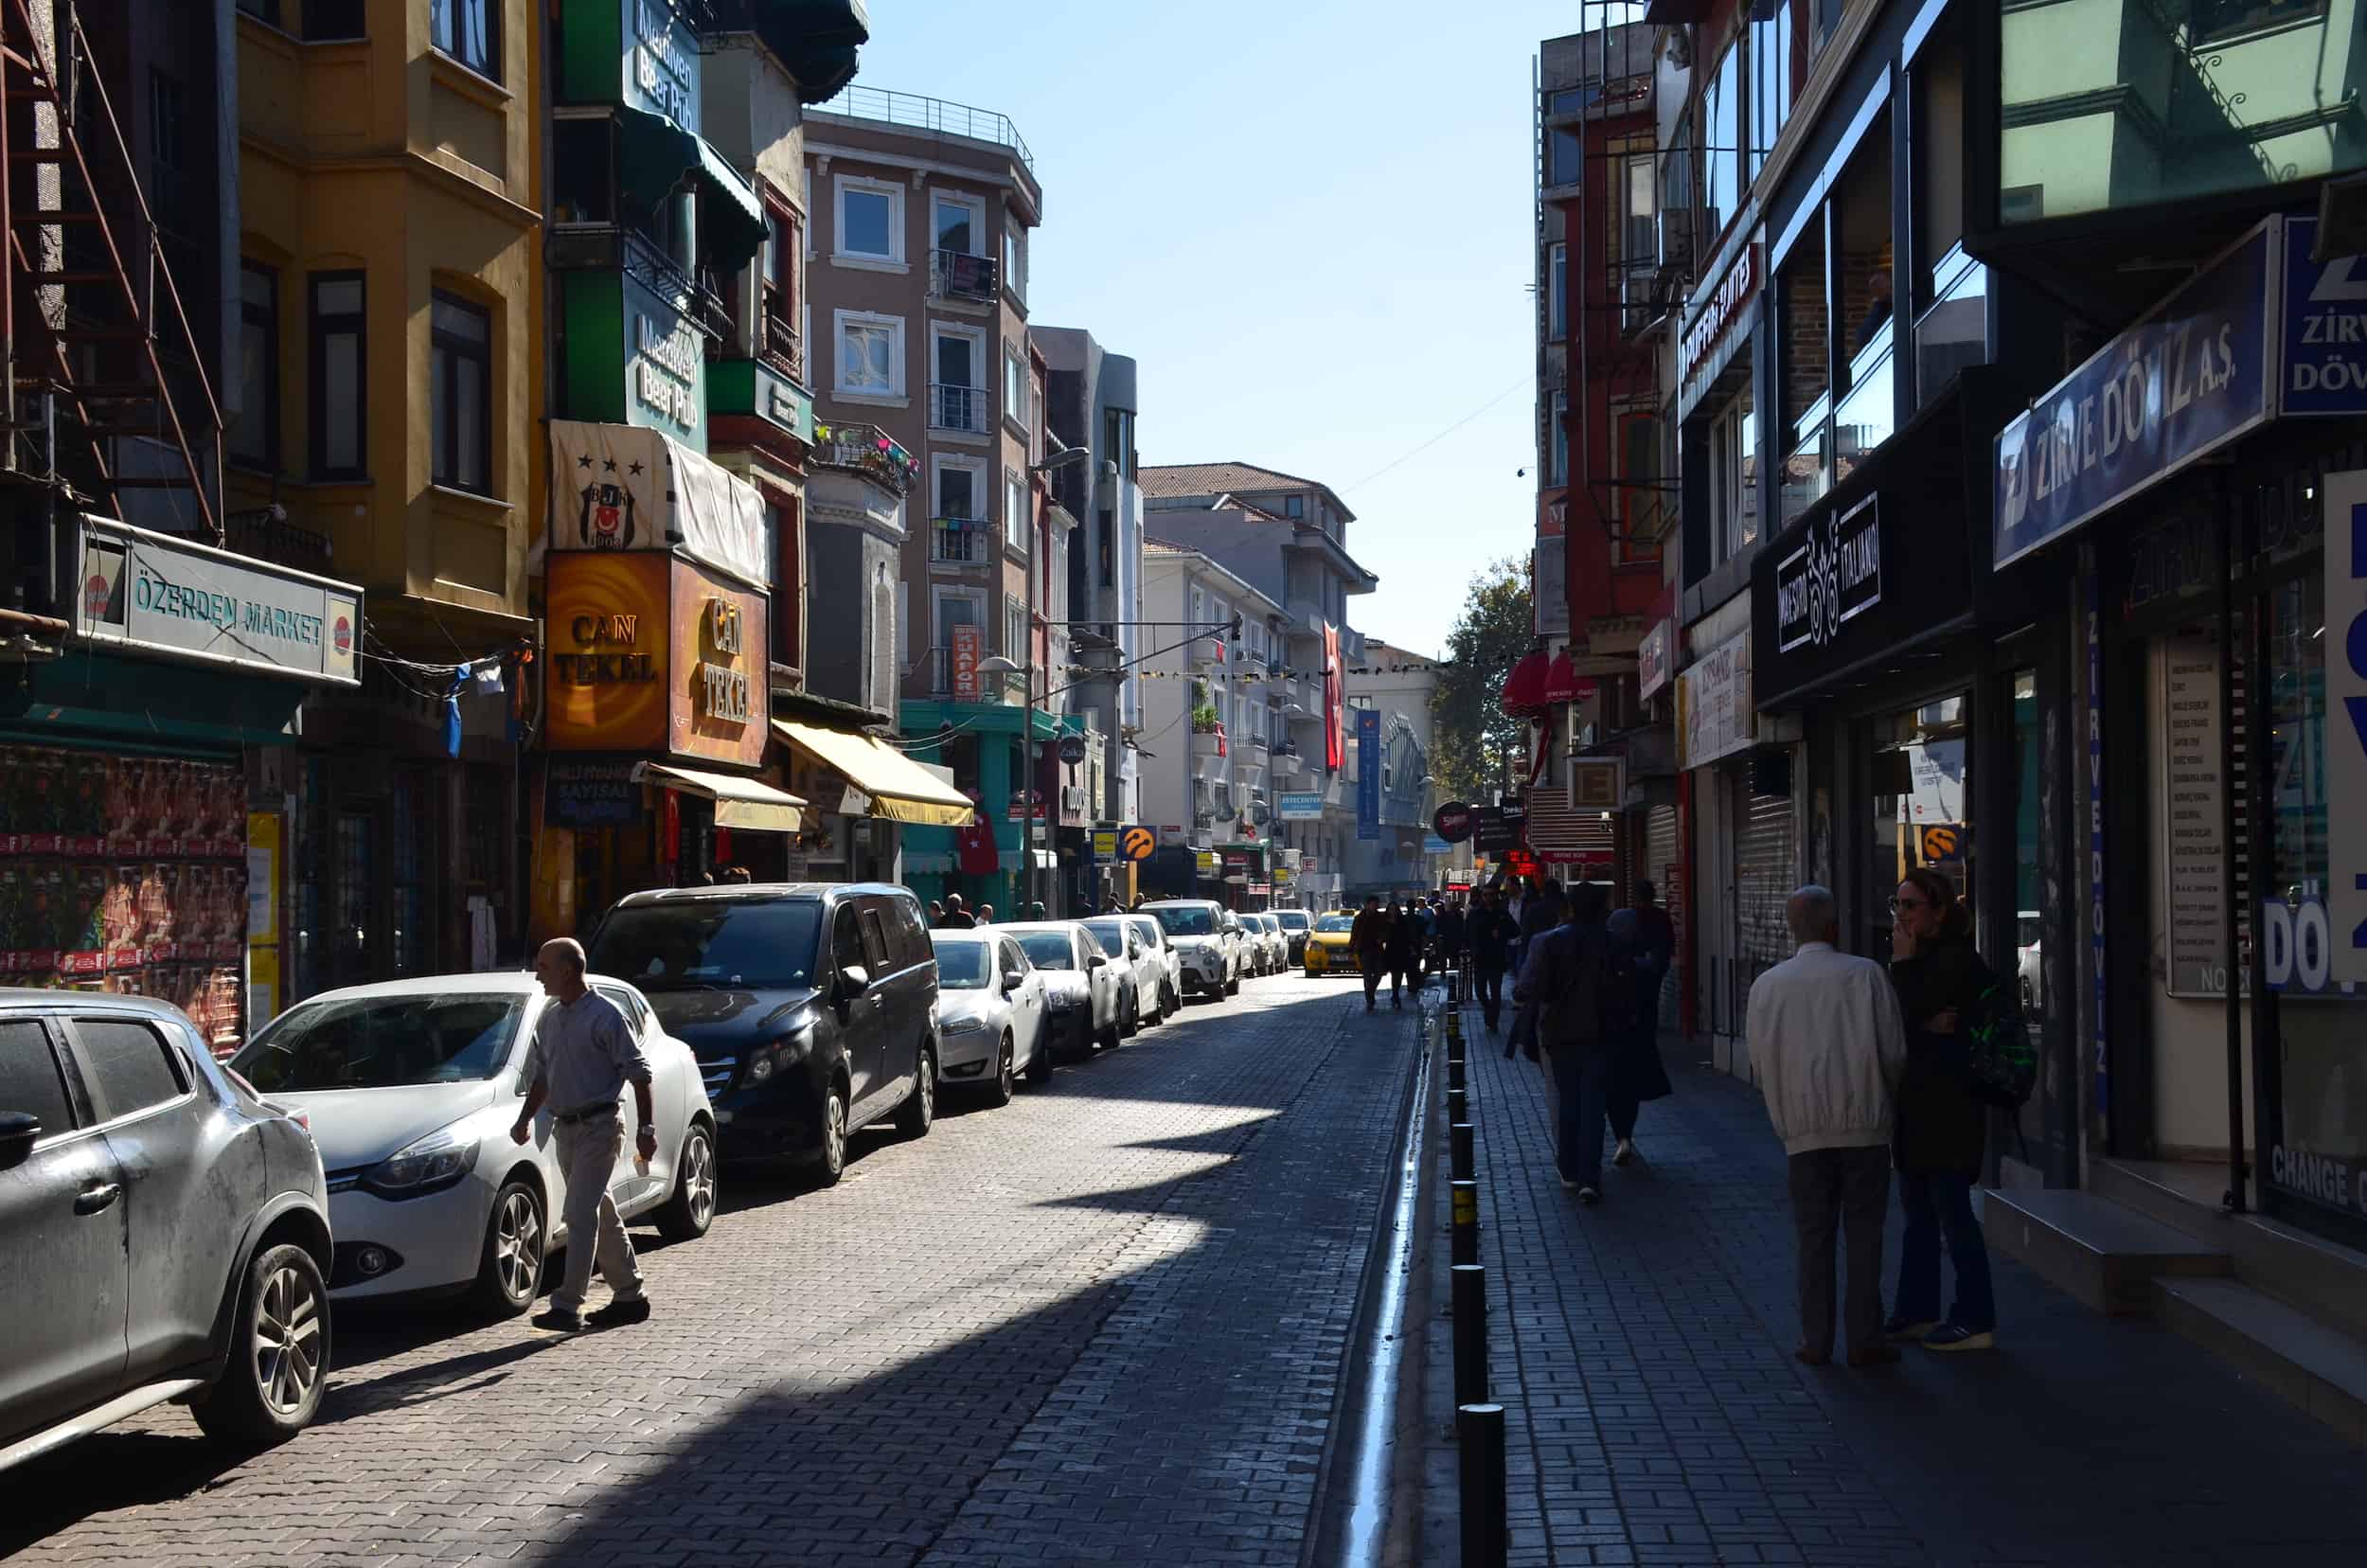 A street through Çarşı in Beşiktaş, Istanbul, Turkey